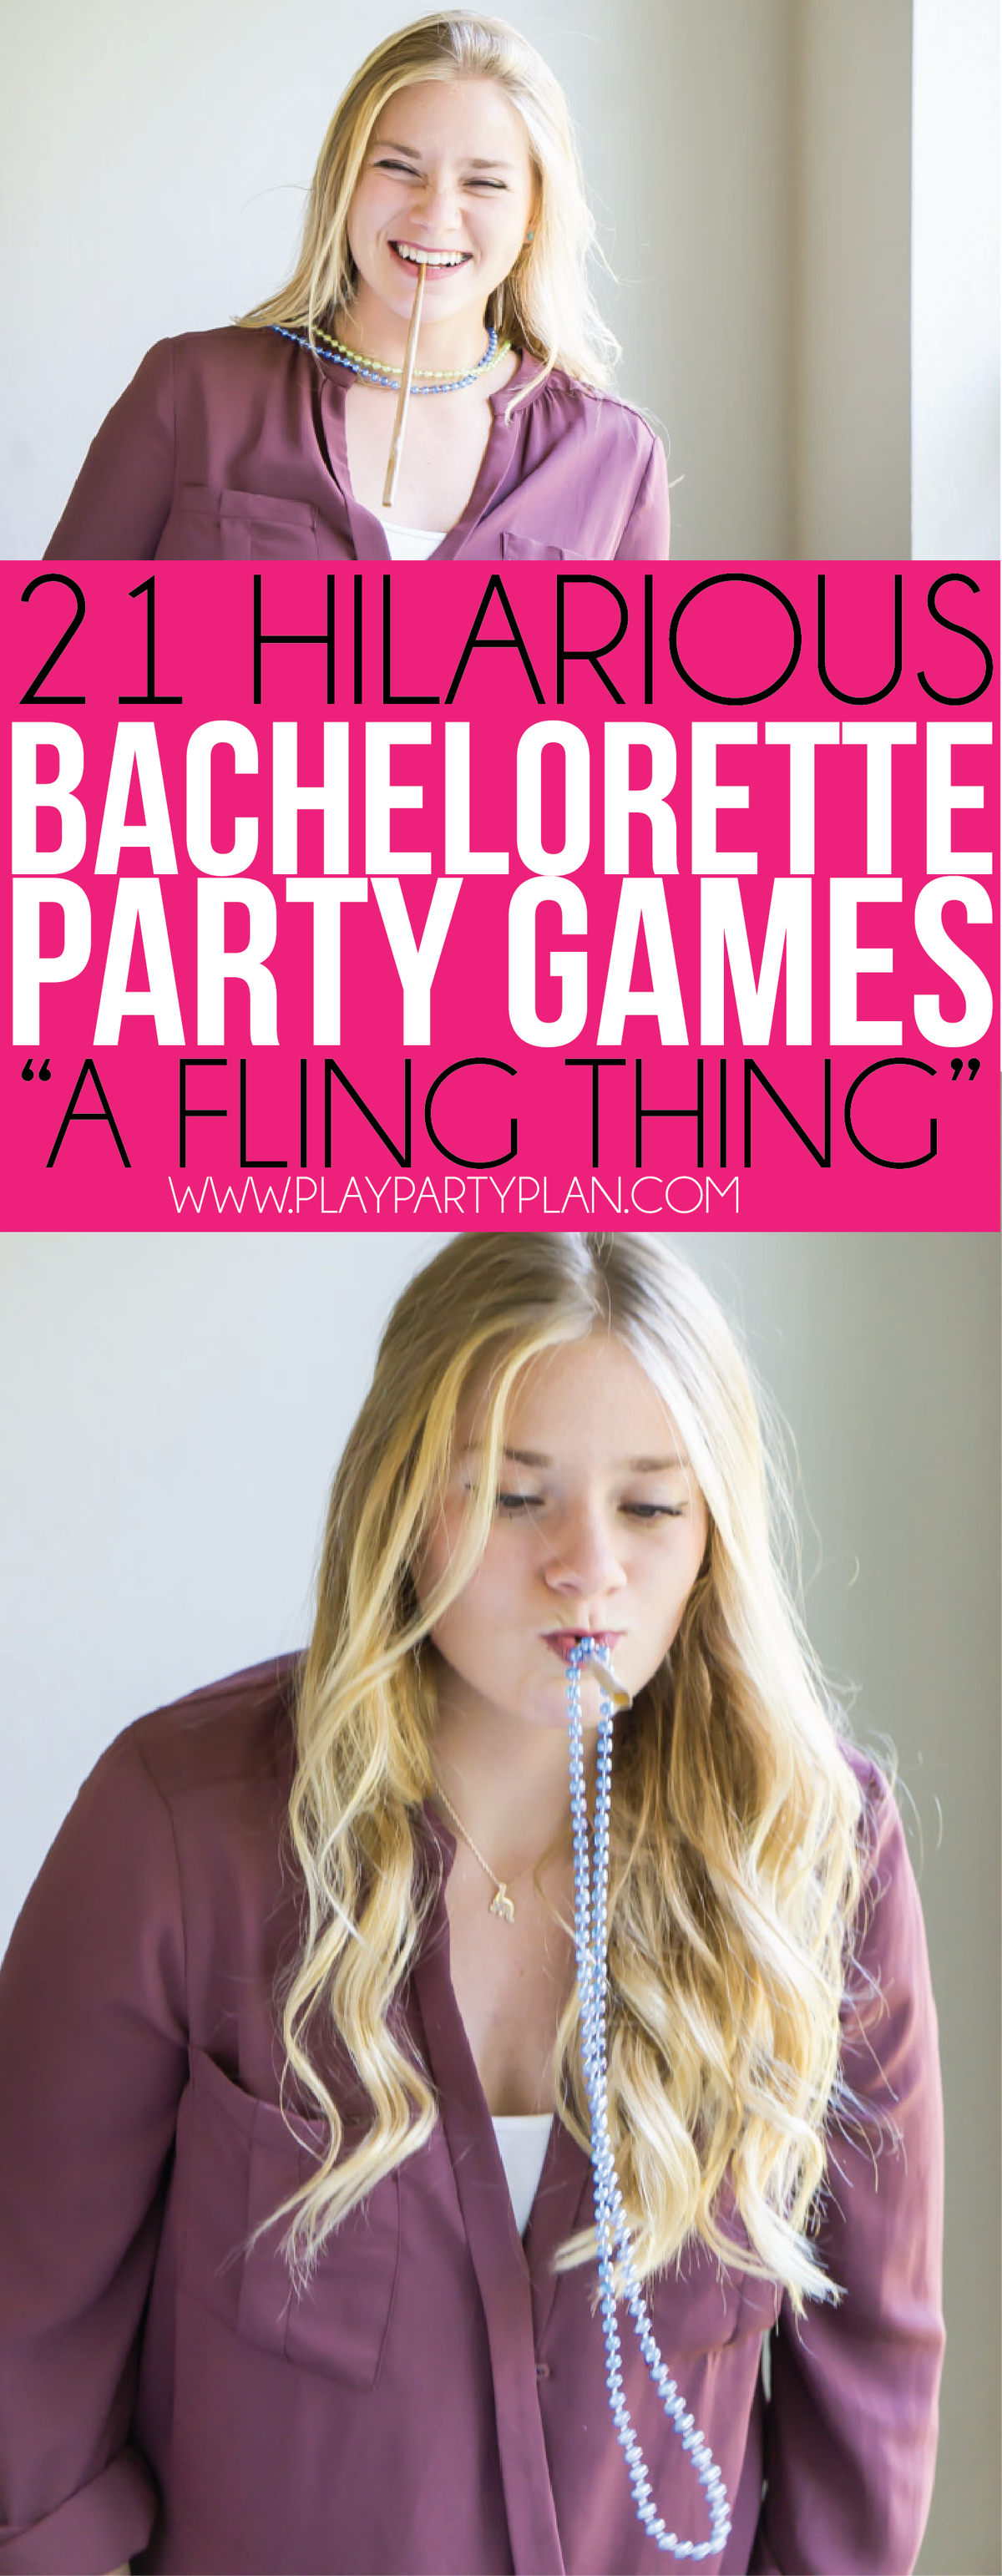 Preizkusite te zabavne igre bachelorette party, kot je privezovanje ogrlic okoli vratu